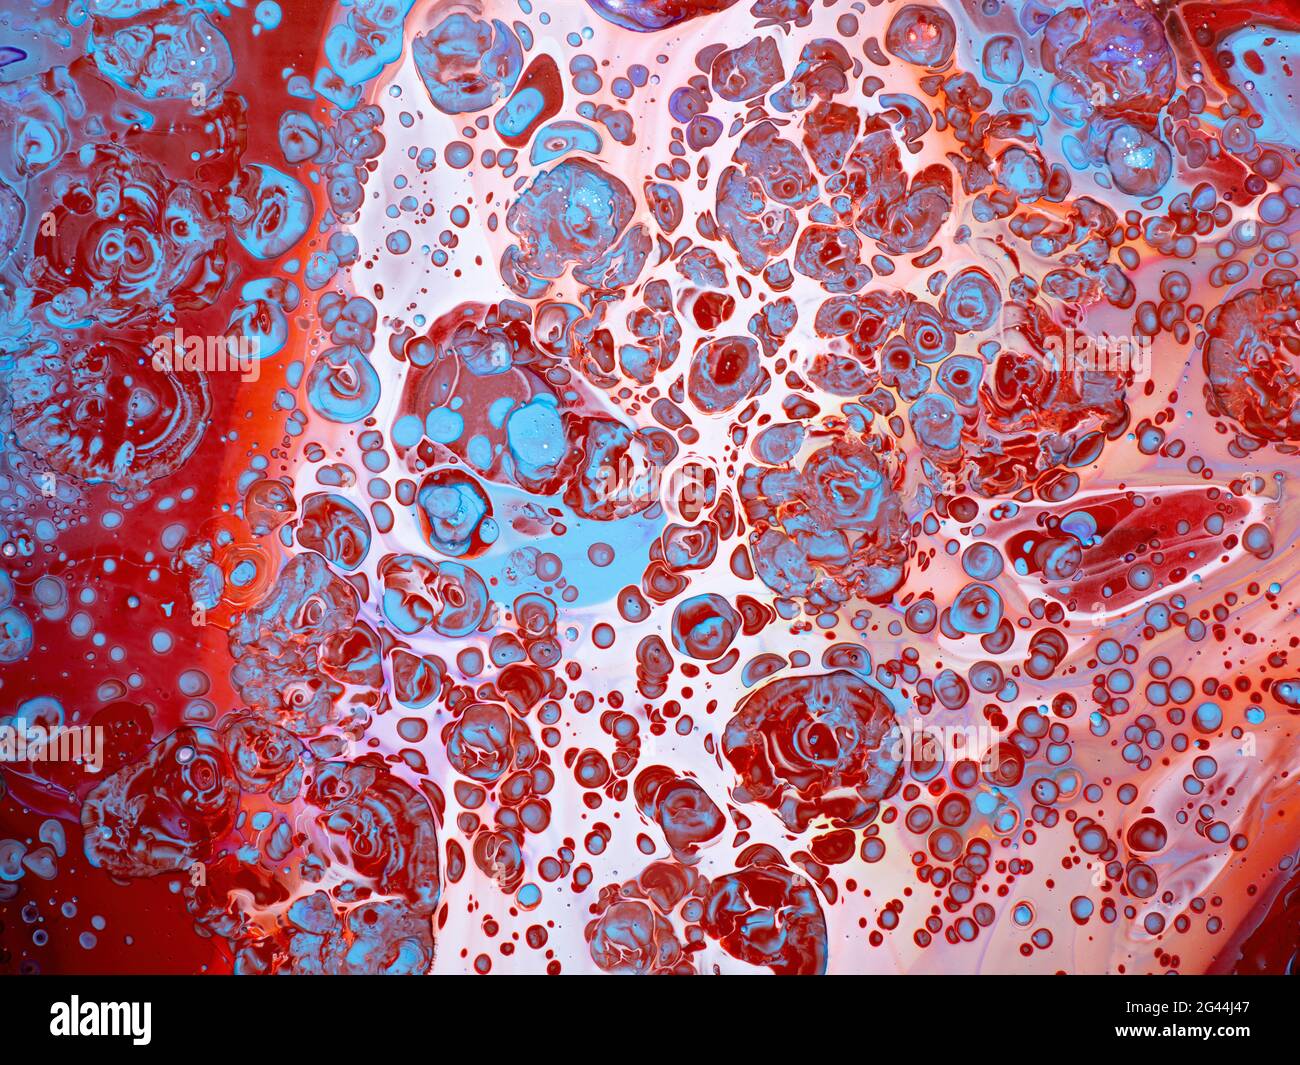 Immagine astratta di colori misti di vernice acrilica Foto Stock